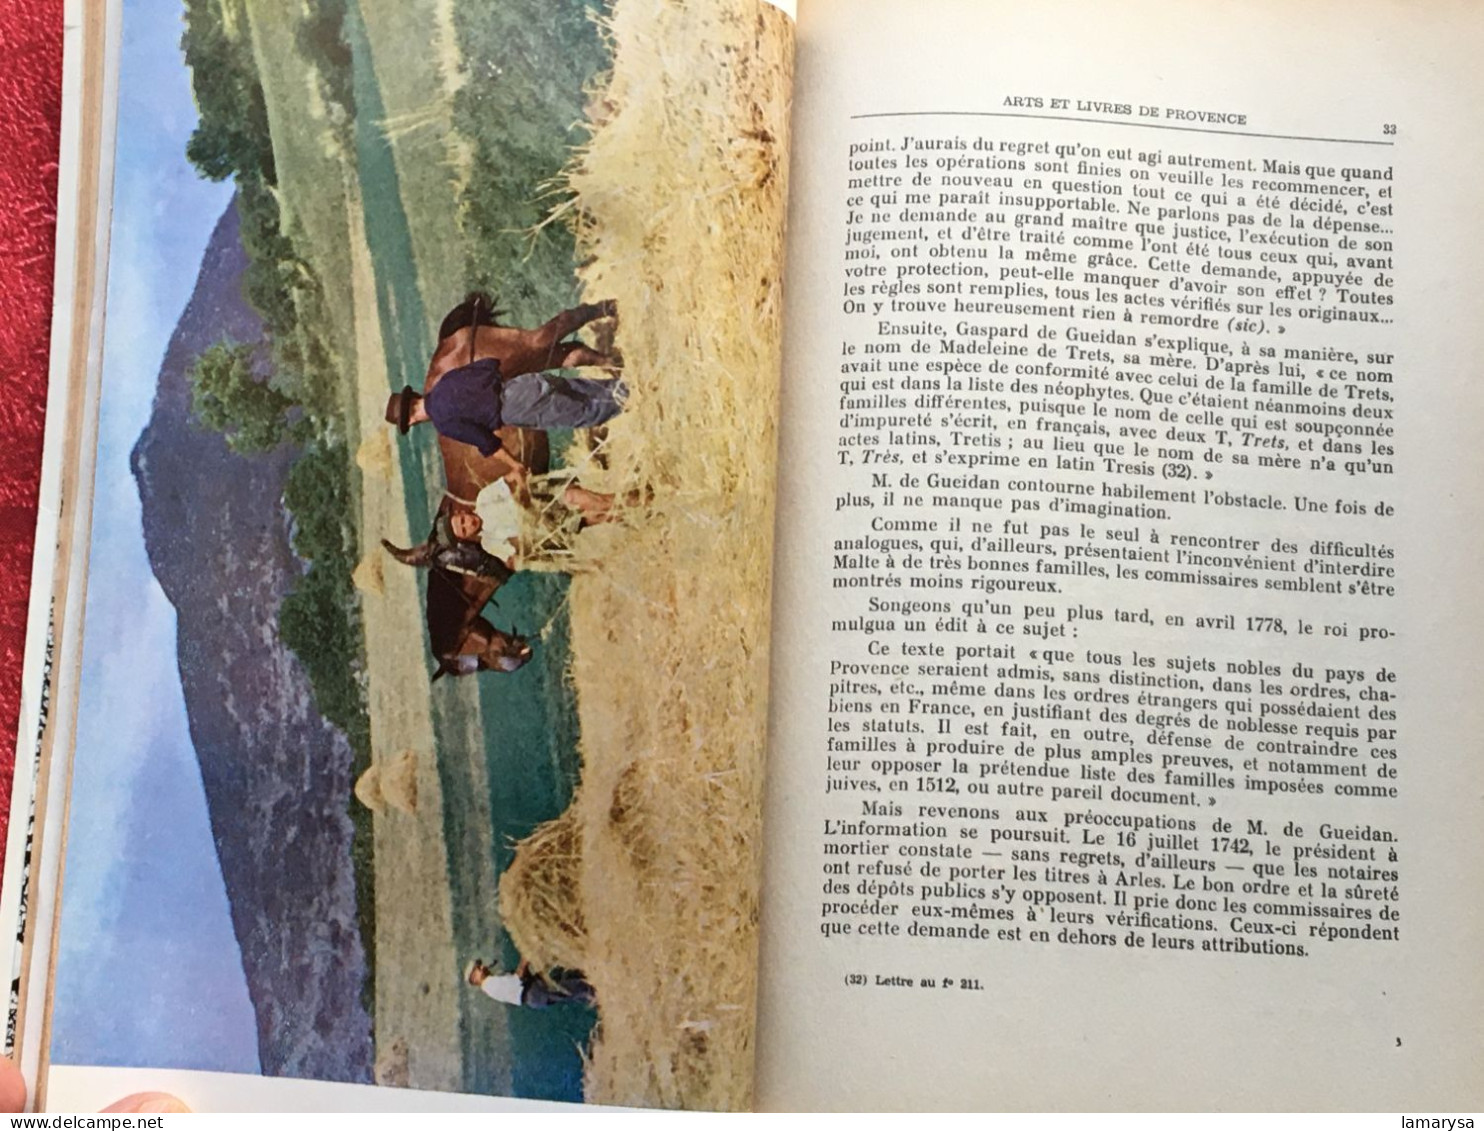 Arts Livre de Provence 29é Bulletin-Famille provençale Les Gueidan-Municipalité de Gardanne-France Culture Régionalisme